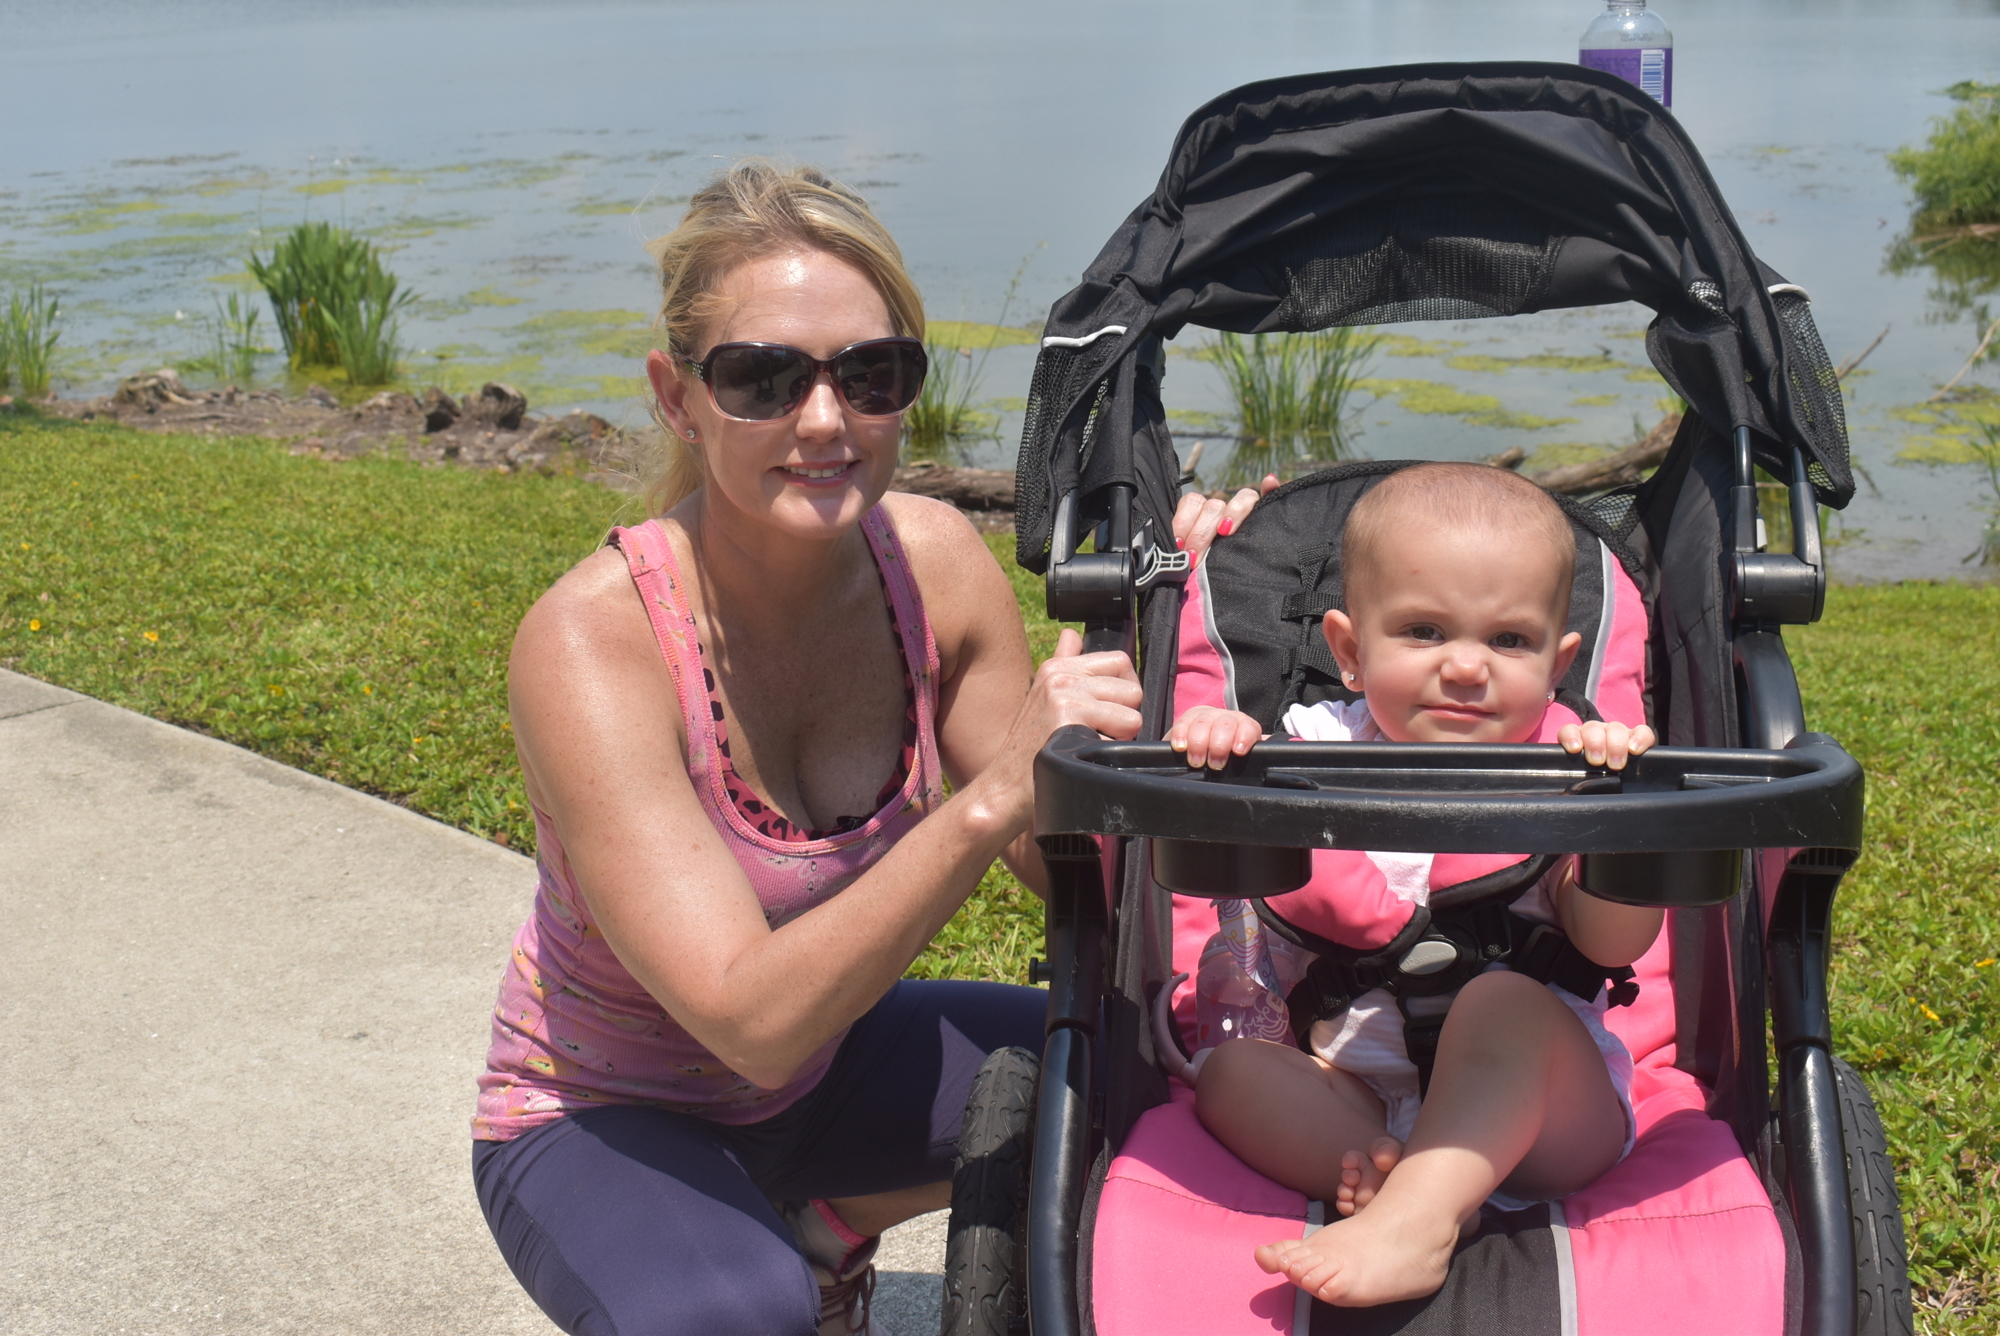 Lake Vista's Jensen Aldrich loves taking her 1-year-old daughter Shayne Aldrich for walks around Lakewood Ranch, especially when they see gallinule birds.